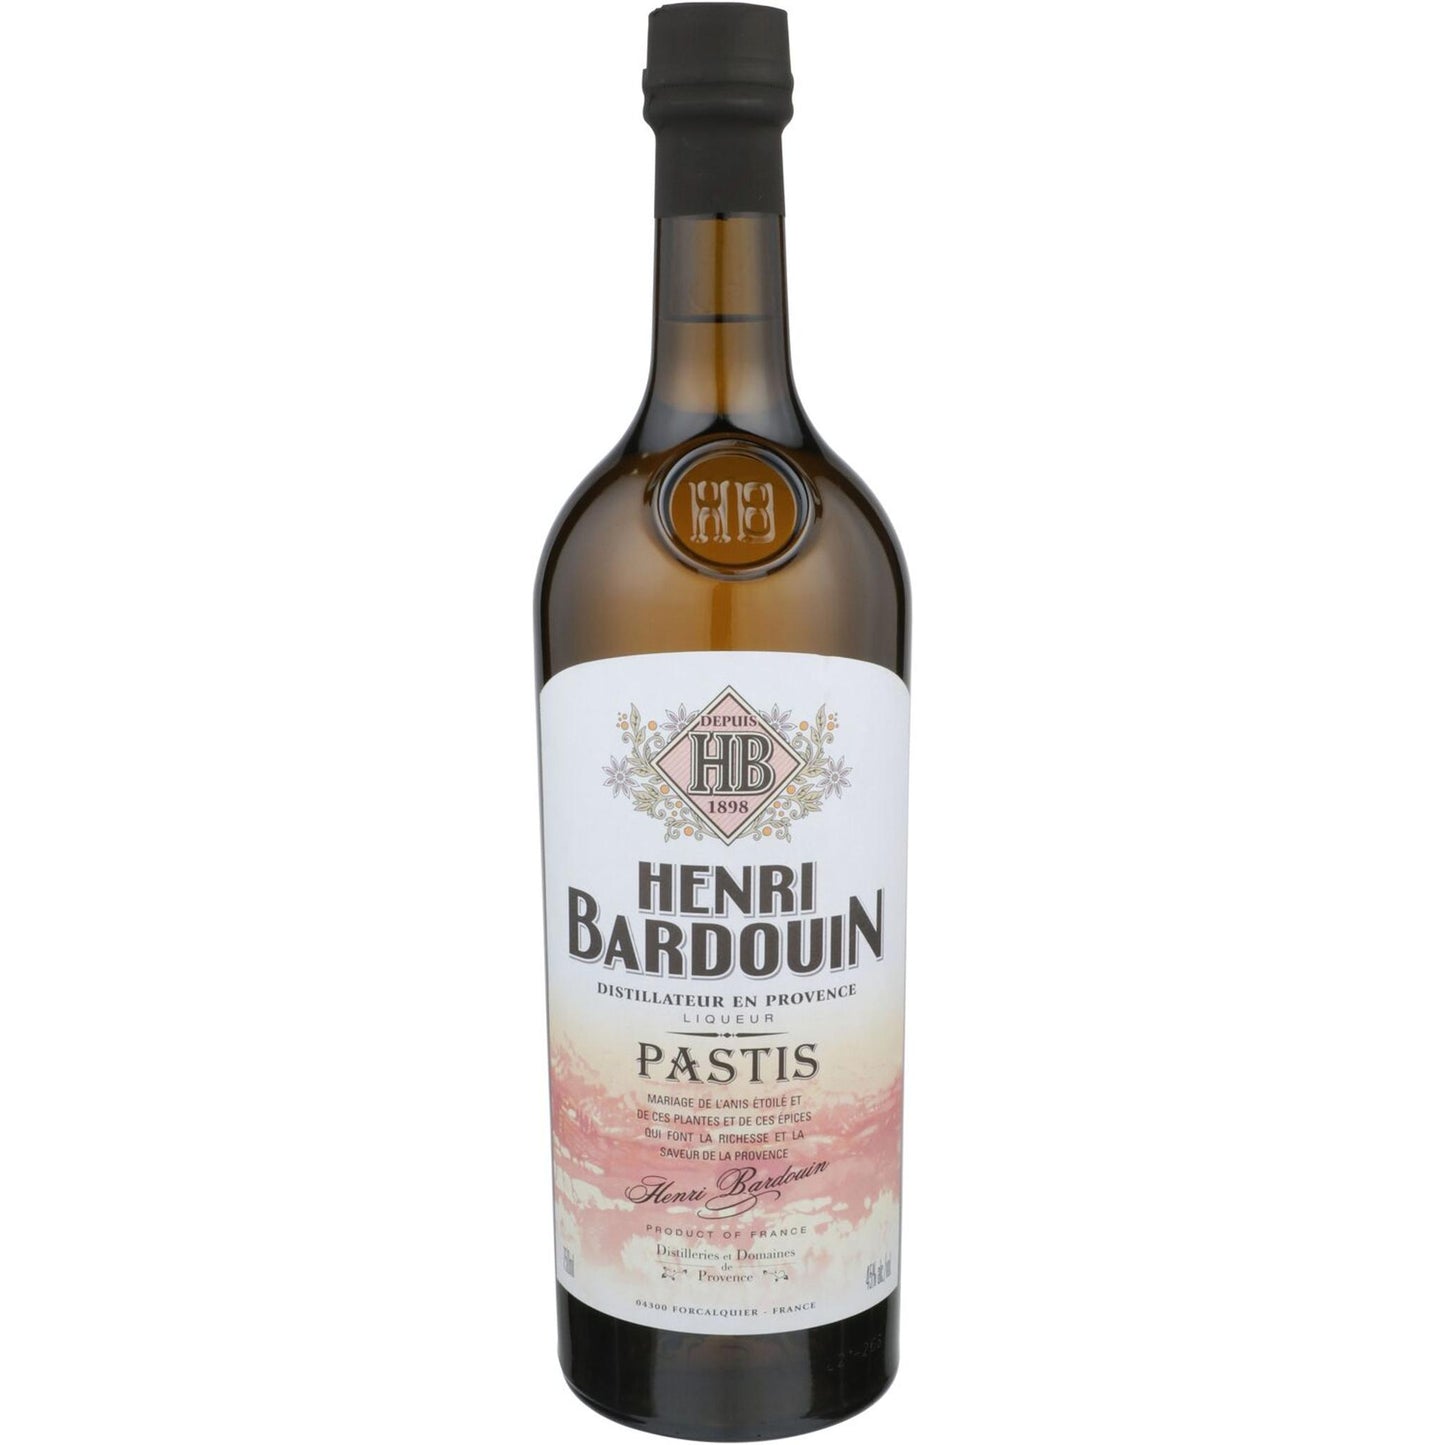 Henri Bardouin Pastis - Liquor Geeks